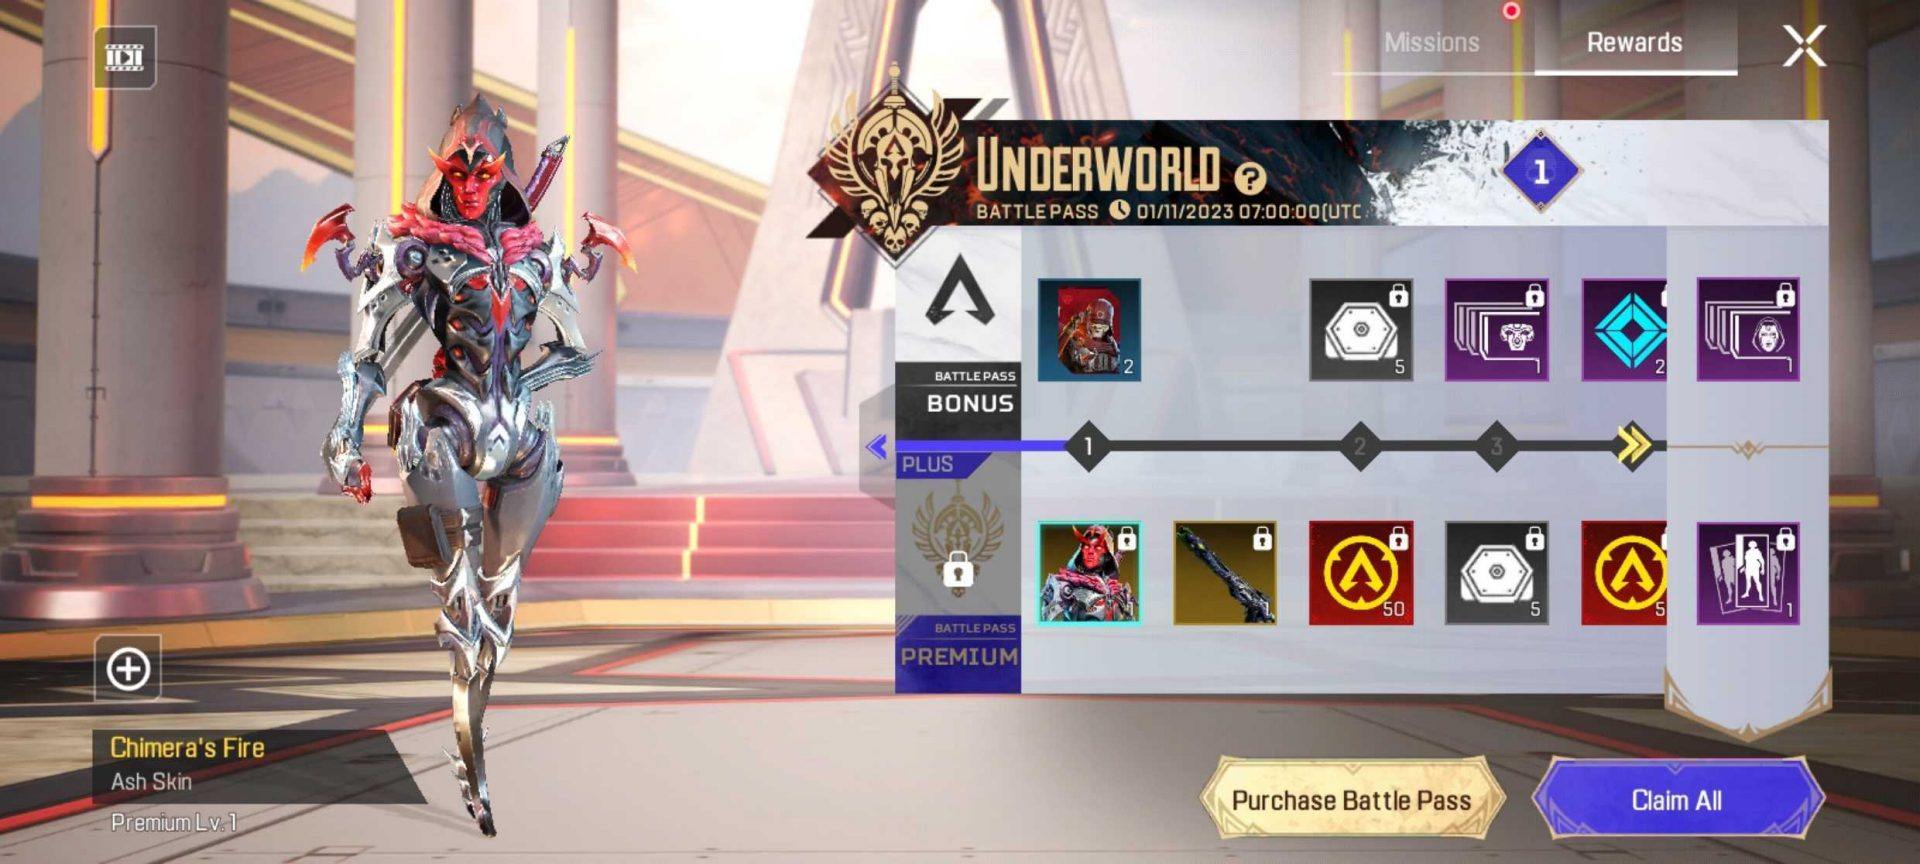 Apex Legends Mobile revela la actualización Underworld con nuevos personajes y modos de juego